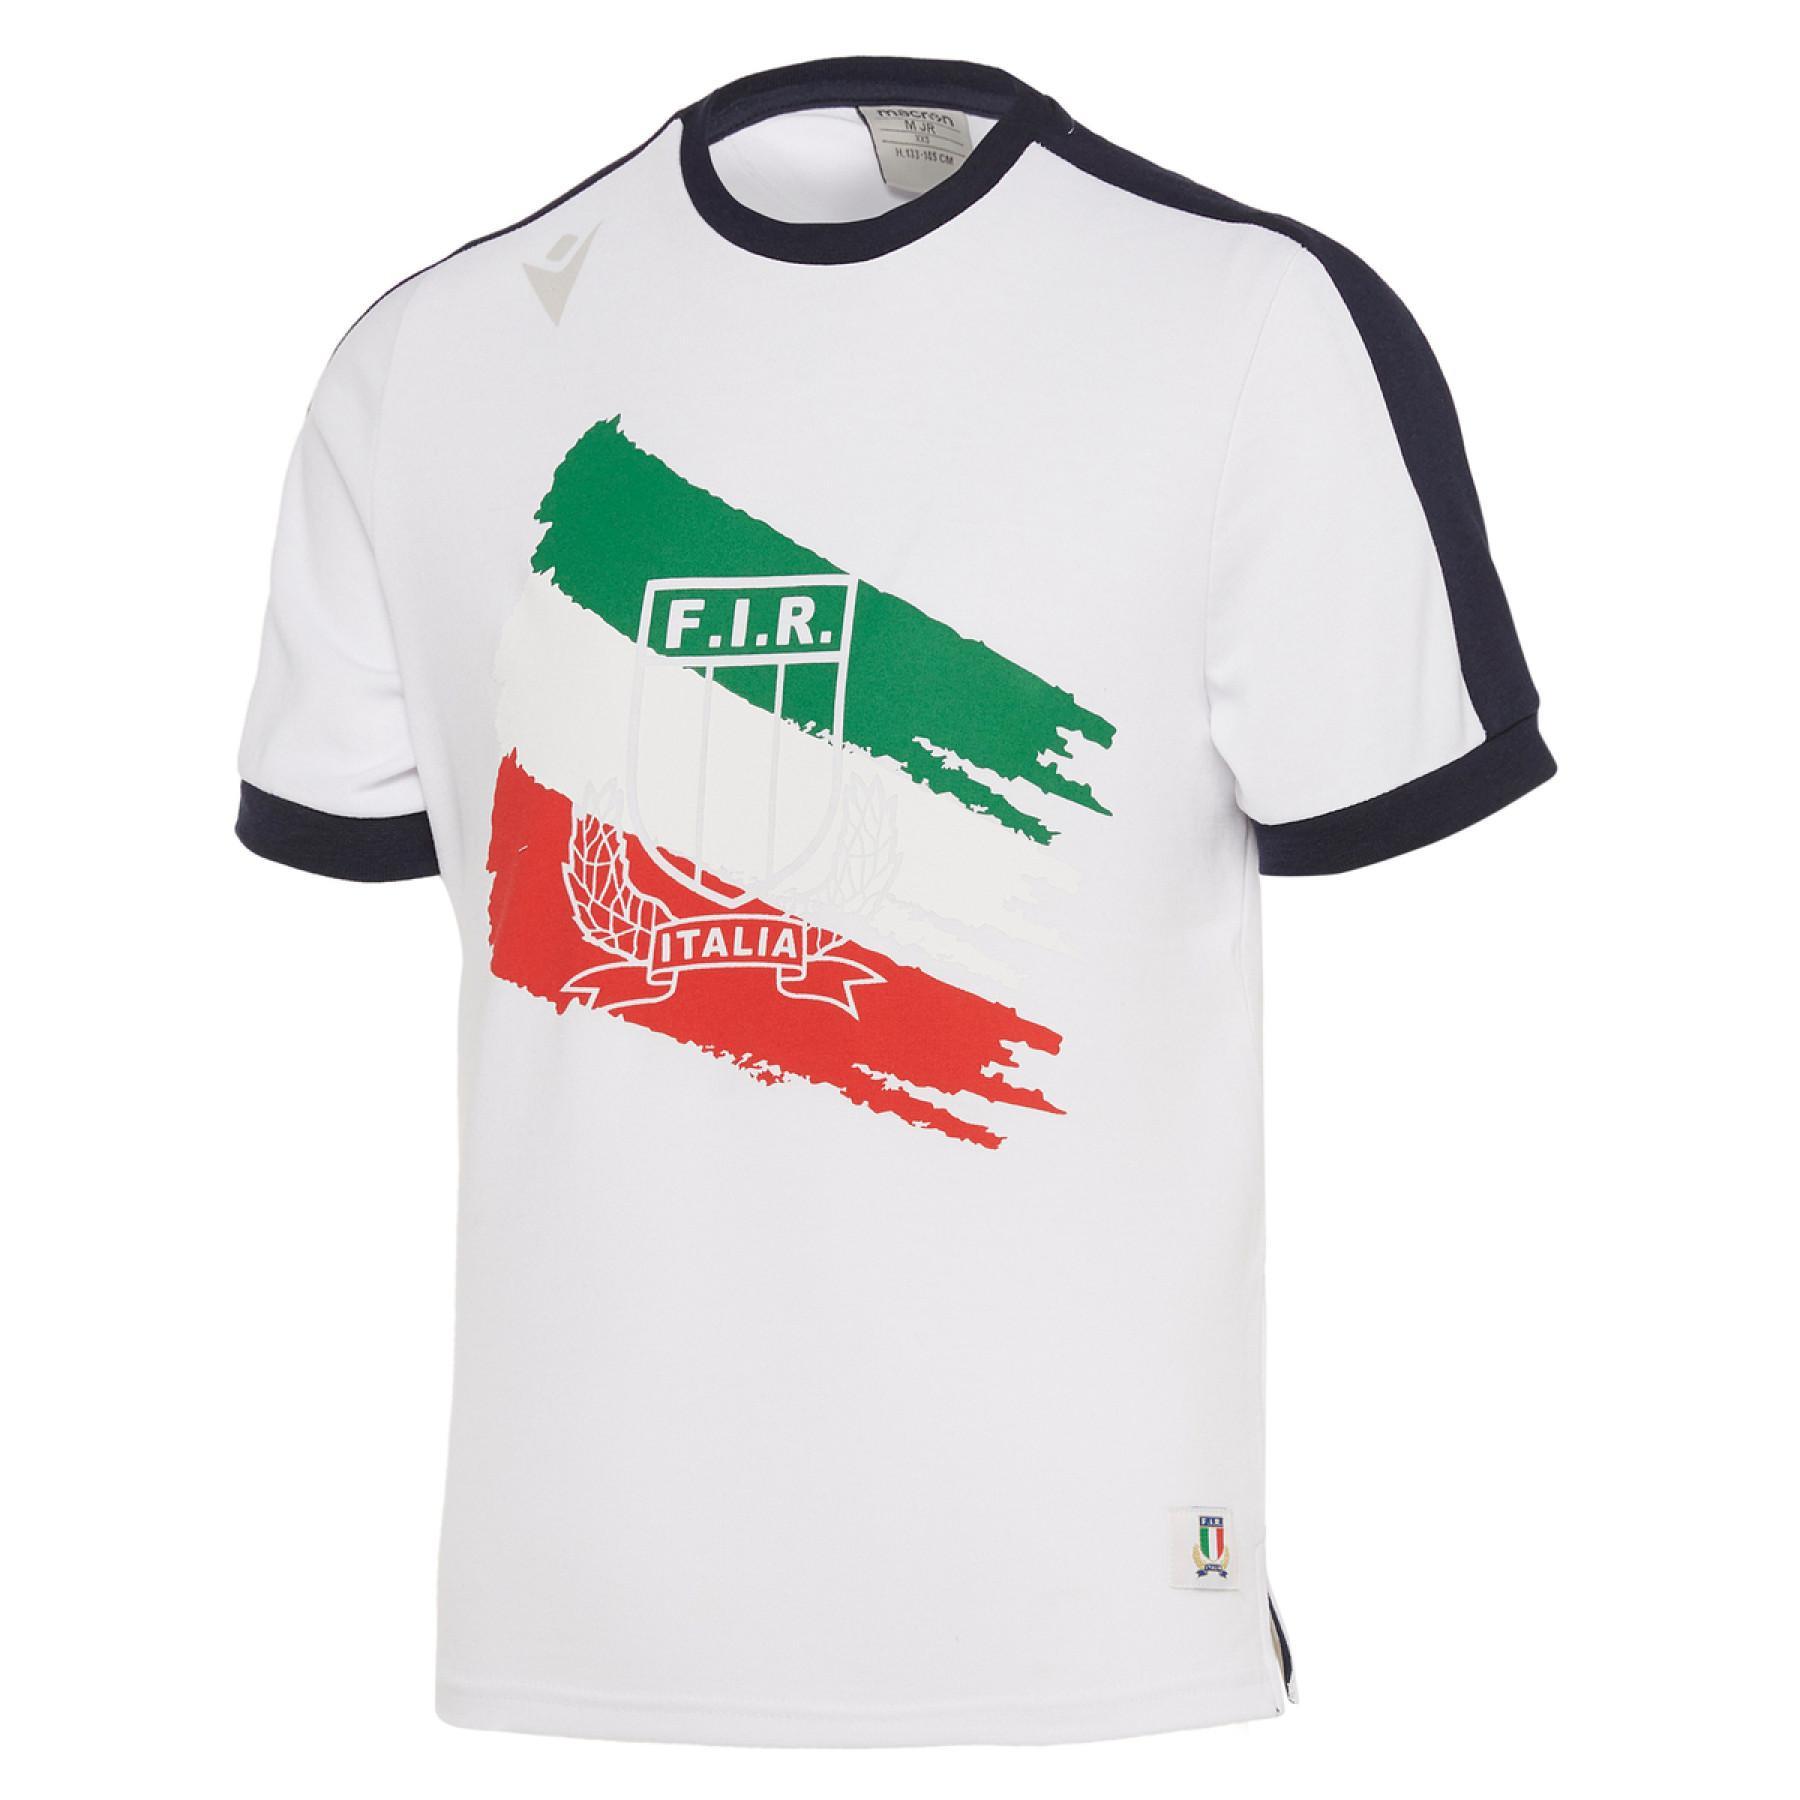 Camiseta de algodón para niños Italie rugby 2019